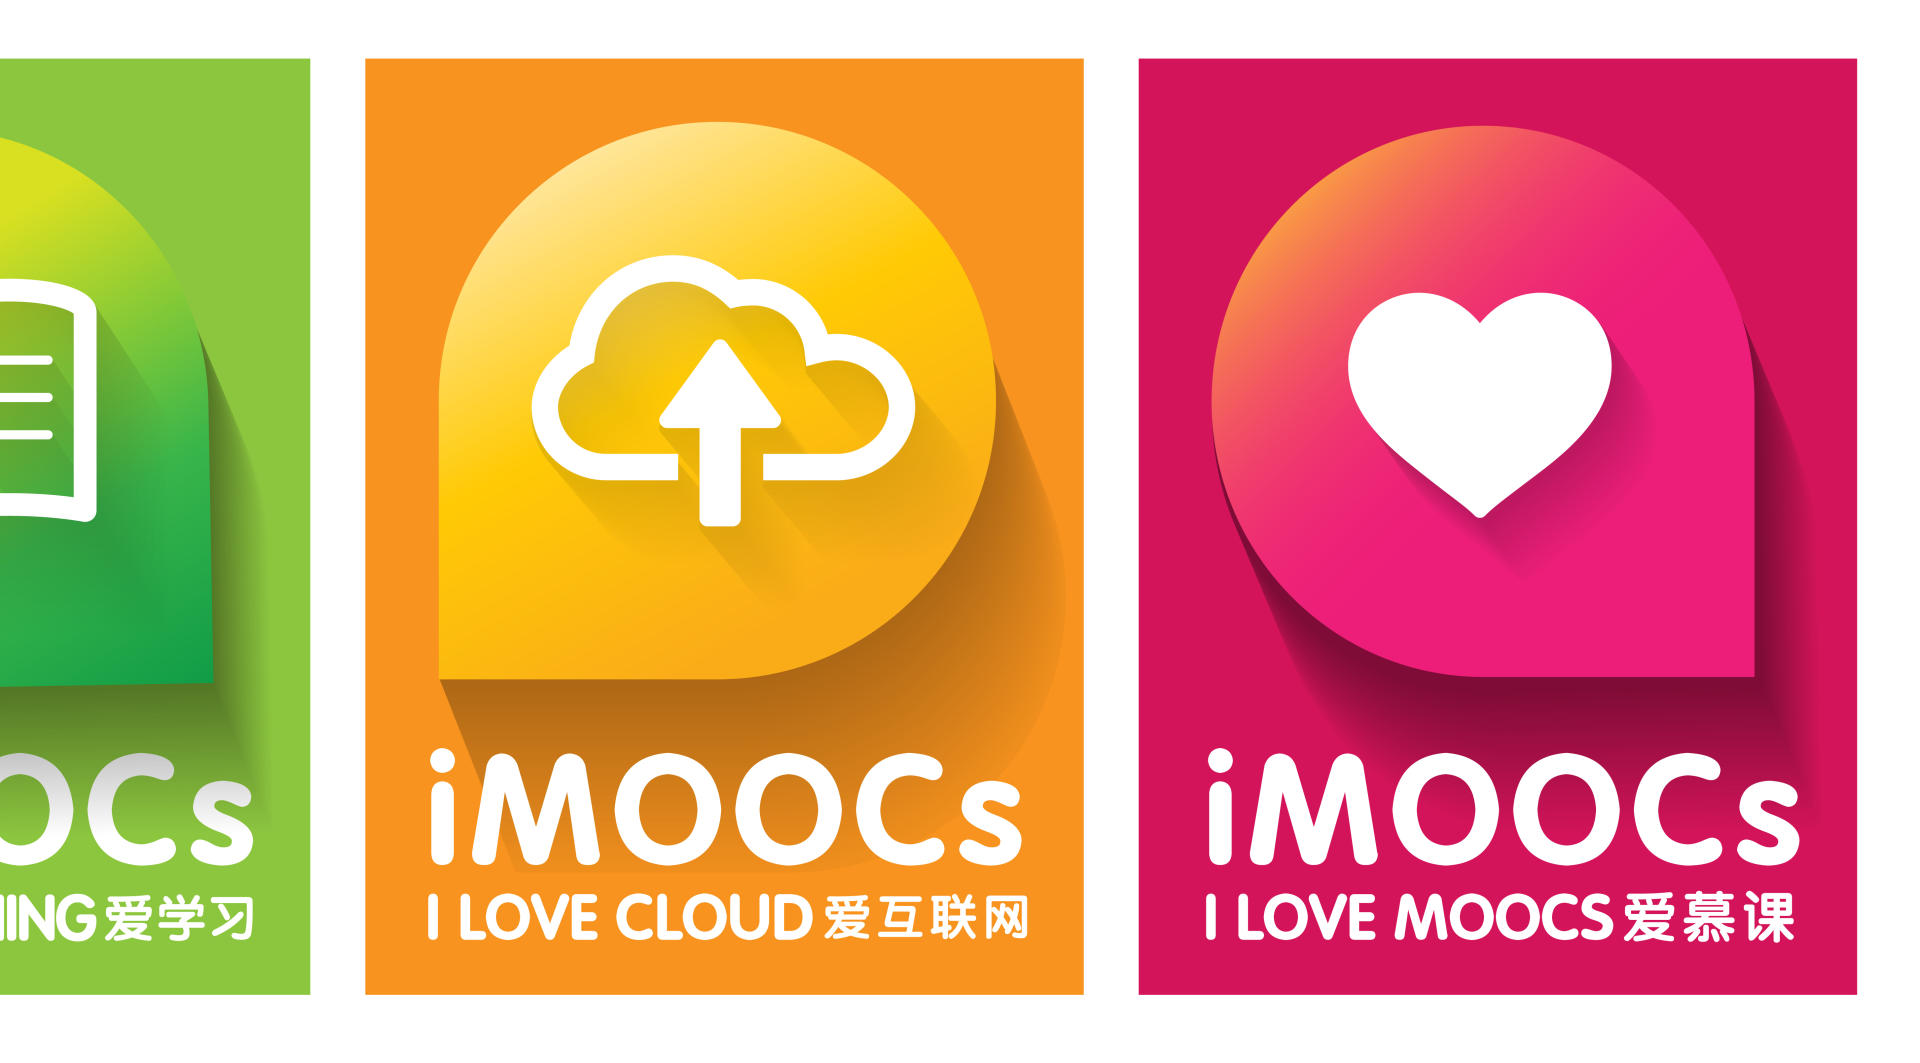 复旦大学慕课平台IMOOCs标识演绎动画